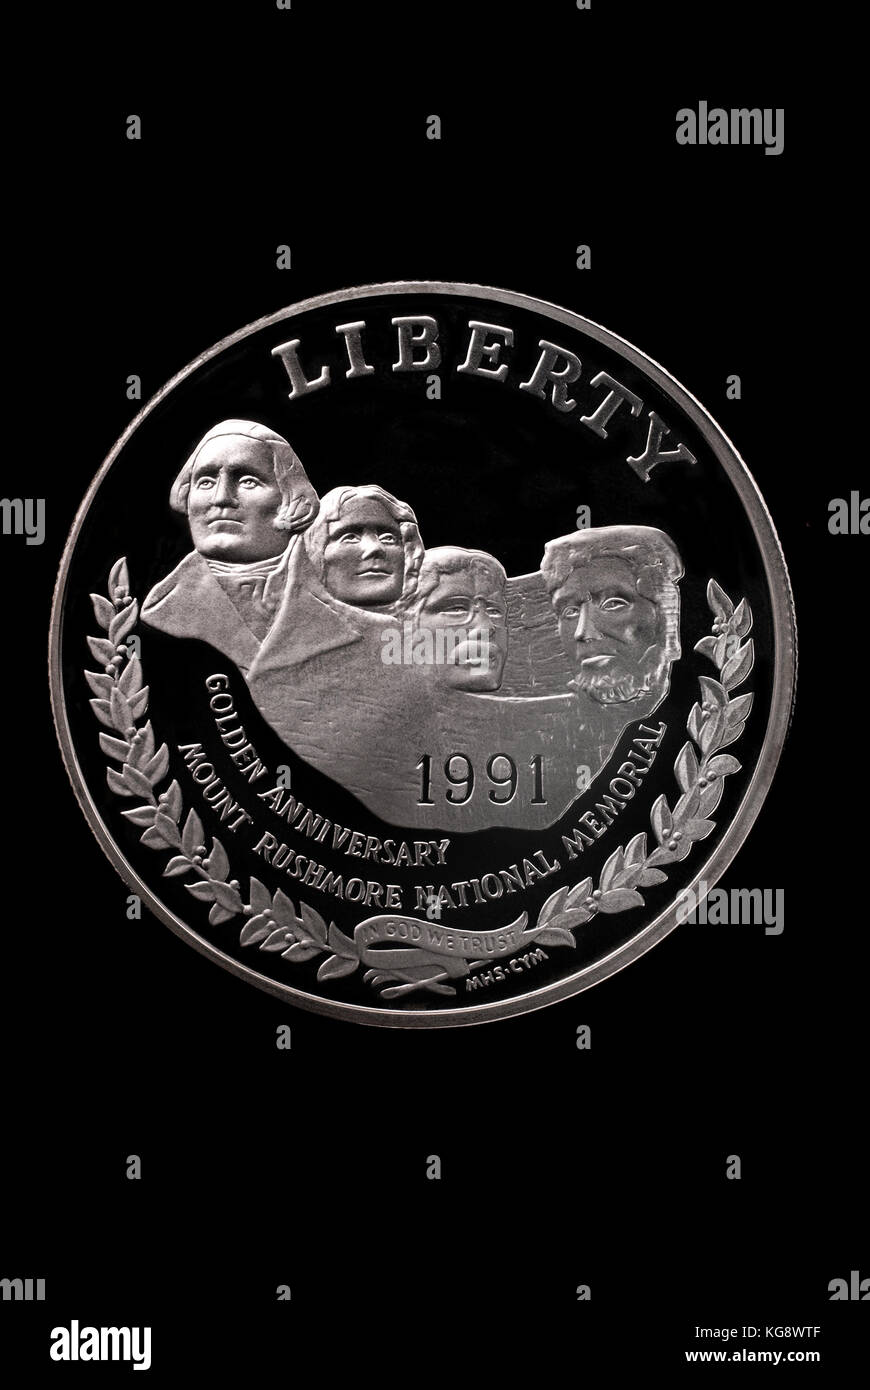 Usa liberty Dollar. zu Ehren des Mount Rushmore National Memorial anneversary. 1991 Vorderseite Stockfoto